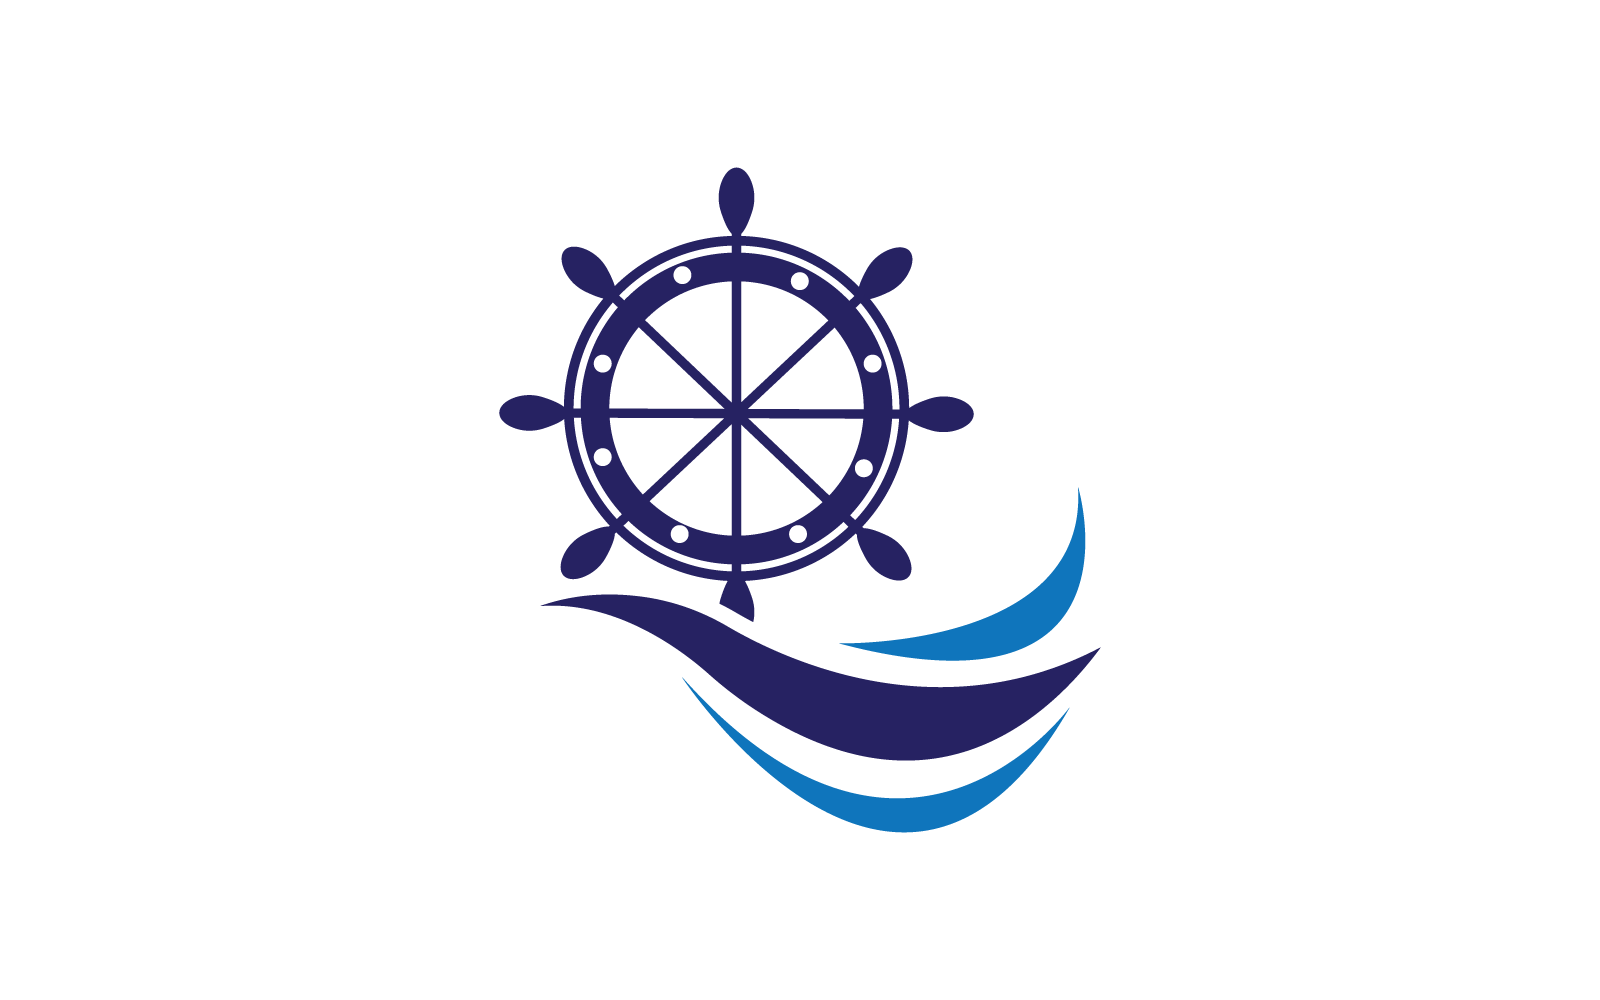 Ship wheel icon logo ilustration vector